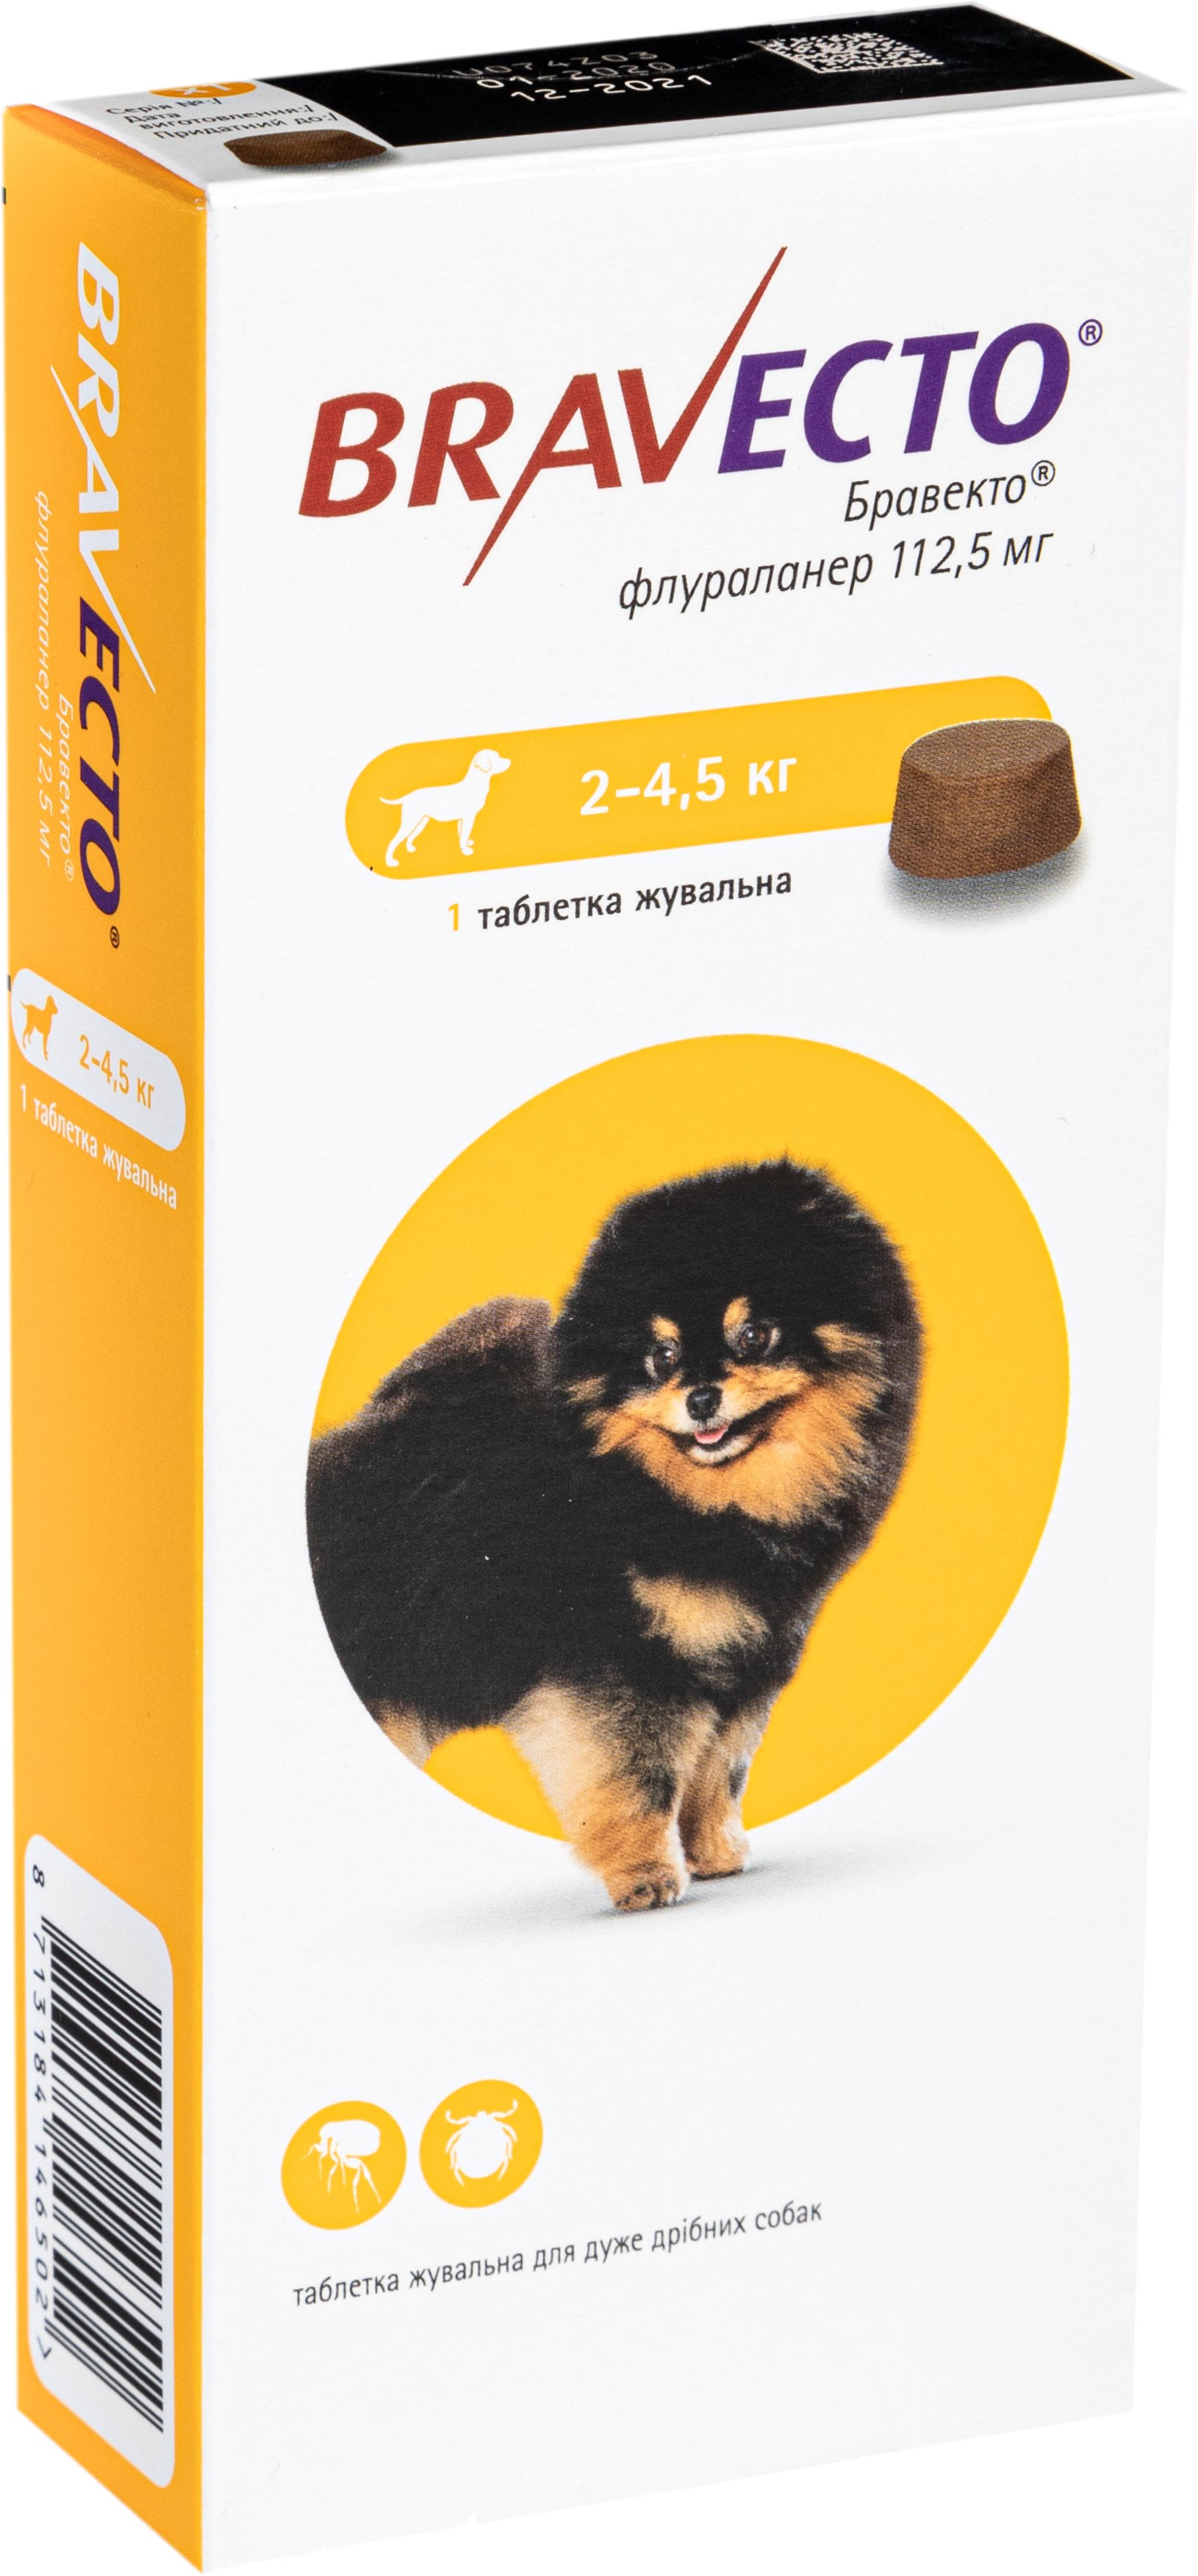 Жевательная таблетка Bravecto, для собак массой от 2 до 4.5 кг, 1 шт. - фото 2